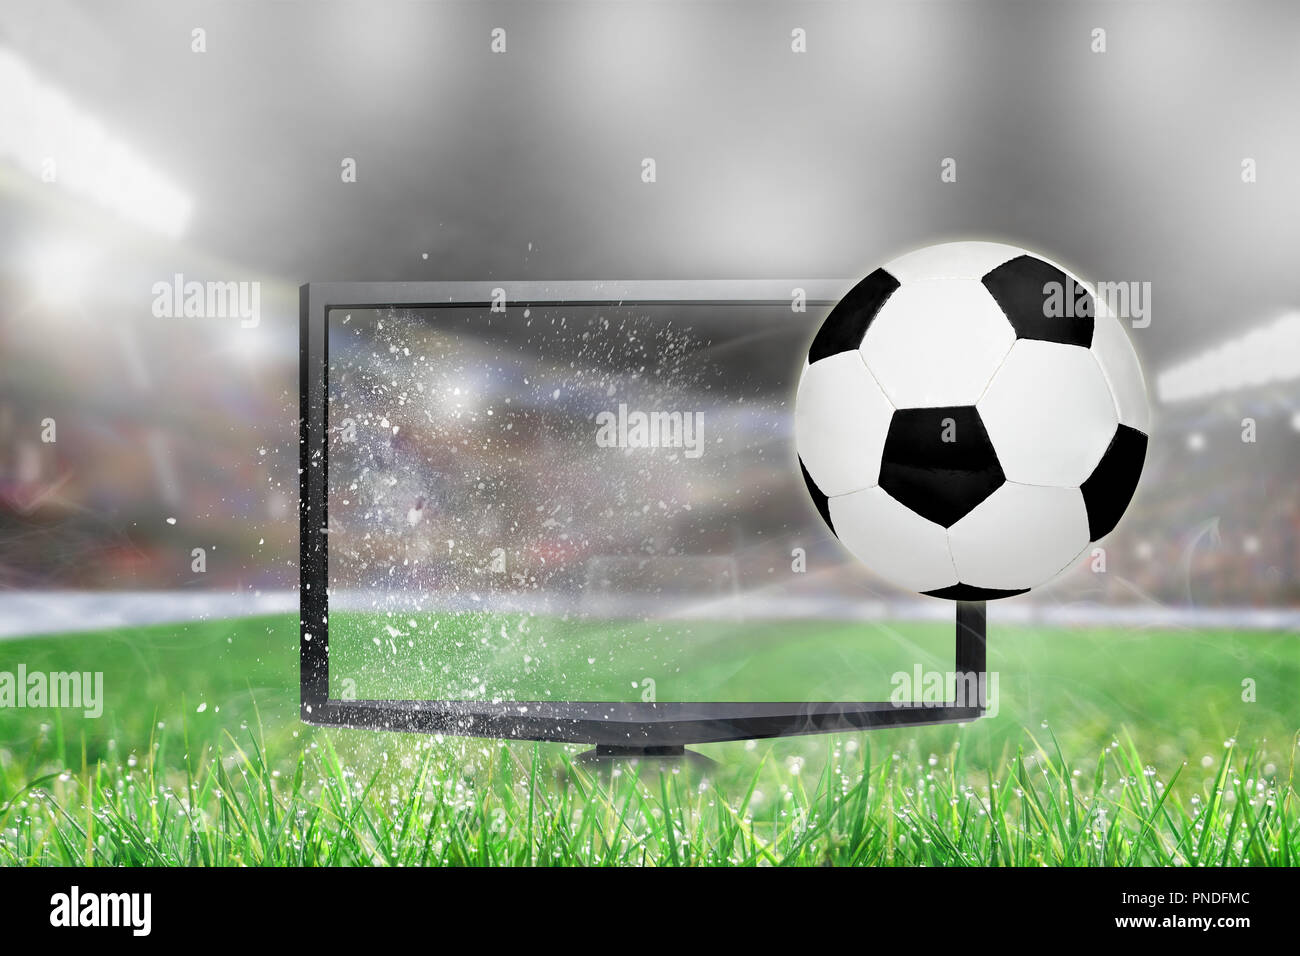 Soccer ball Fliegen aus erschütternden TV-Bildschirm im Stadion mit  kopieren. Konzept der realistische 3D- oder 4D-TV, virtuelle Realität VR  oder Computerspiele Stockfotografie - Alamy